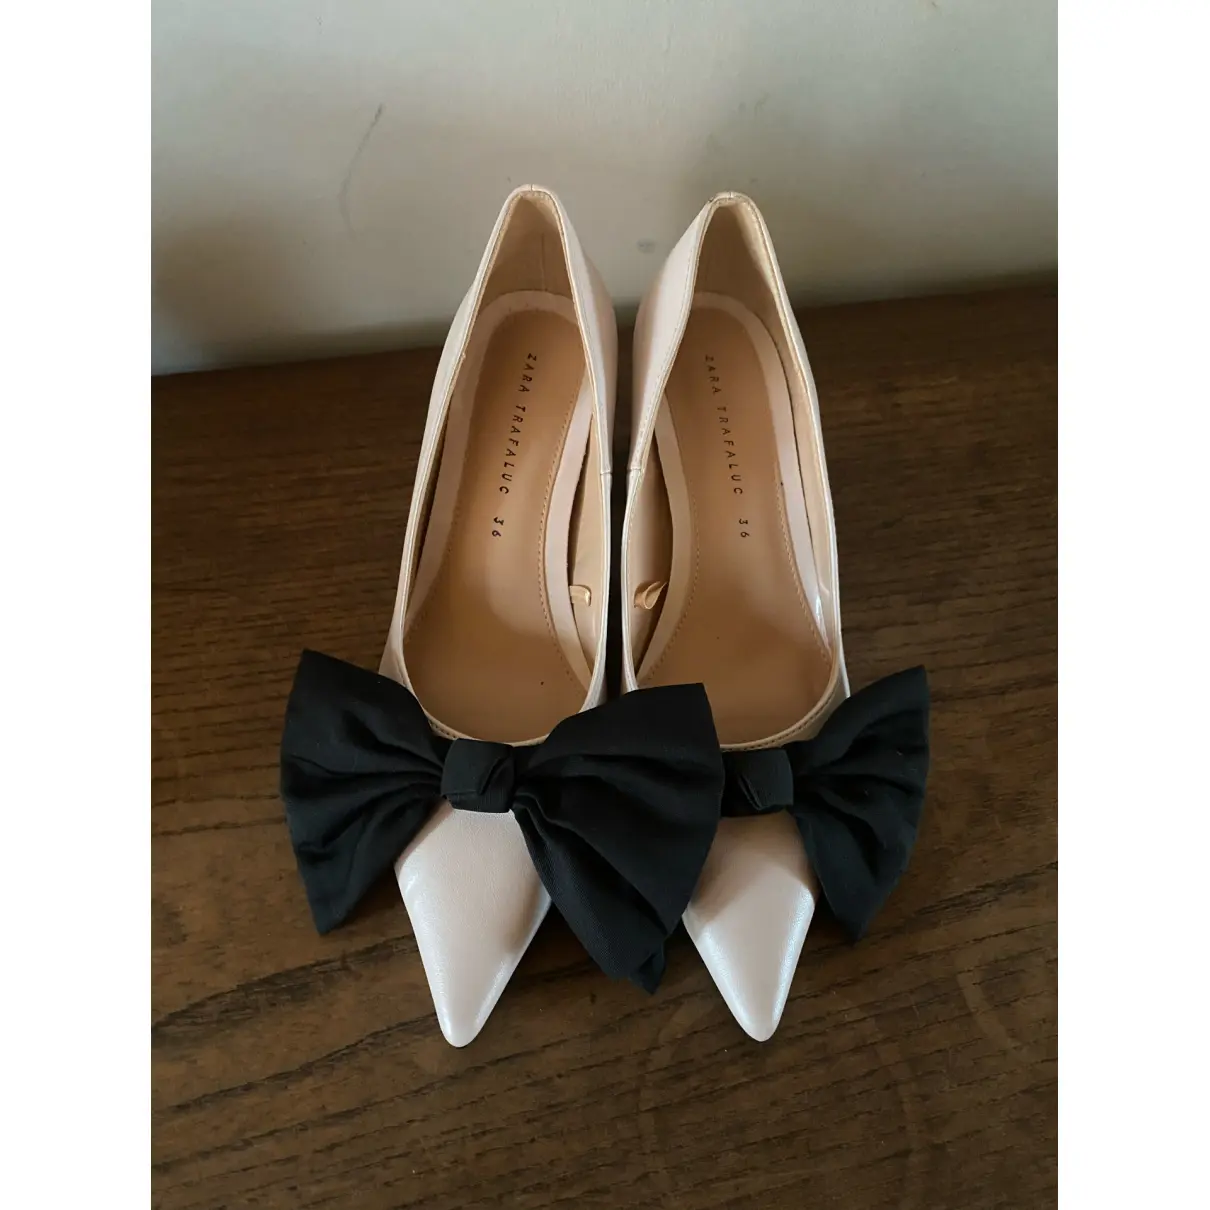 Buy Zara Leather heels online